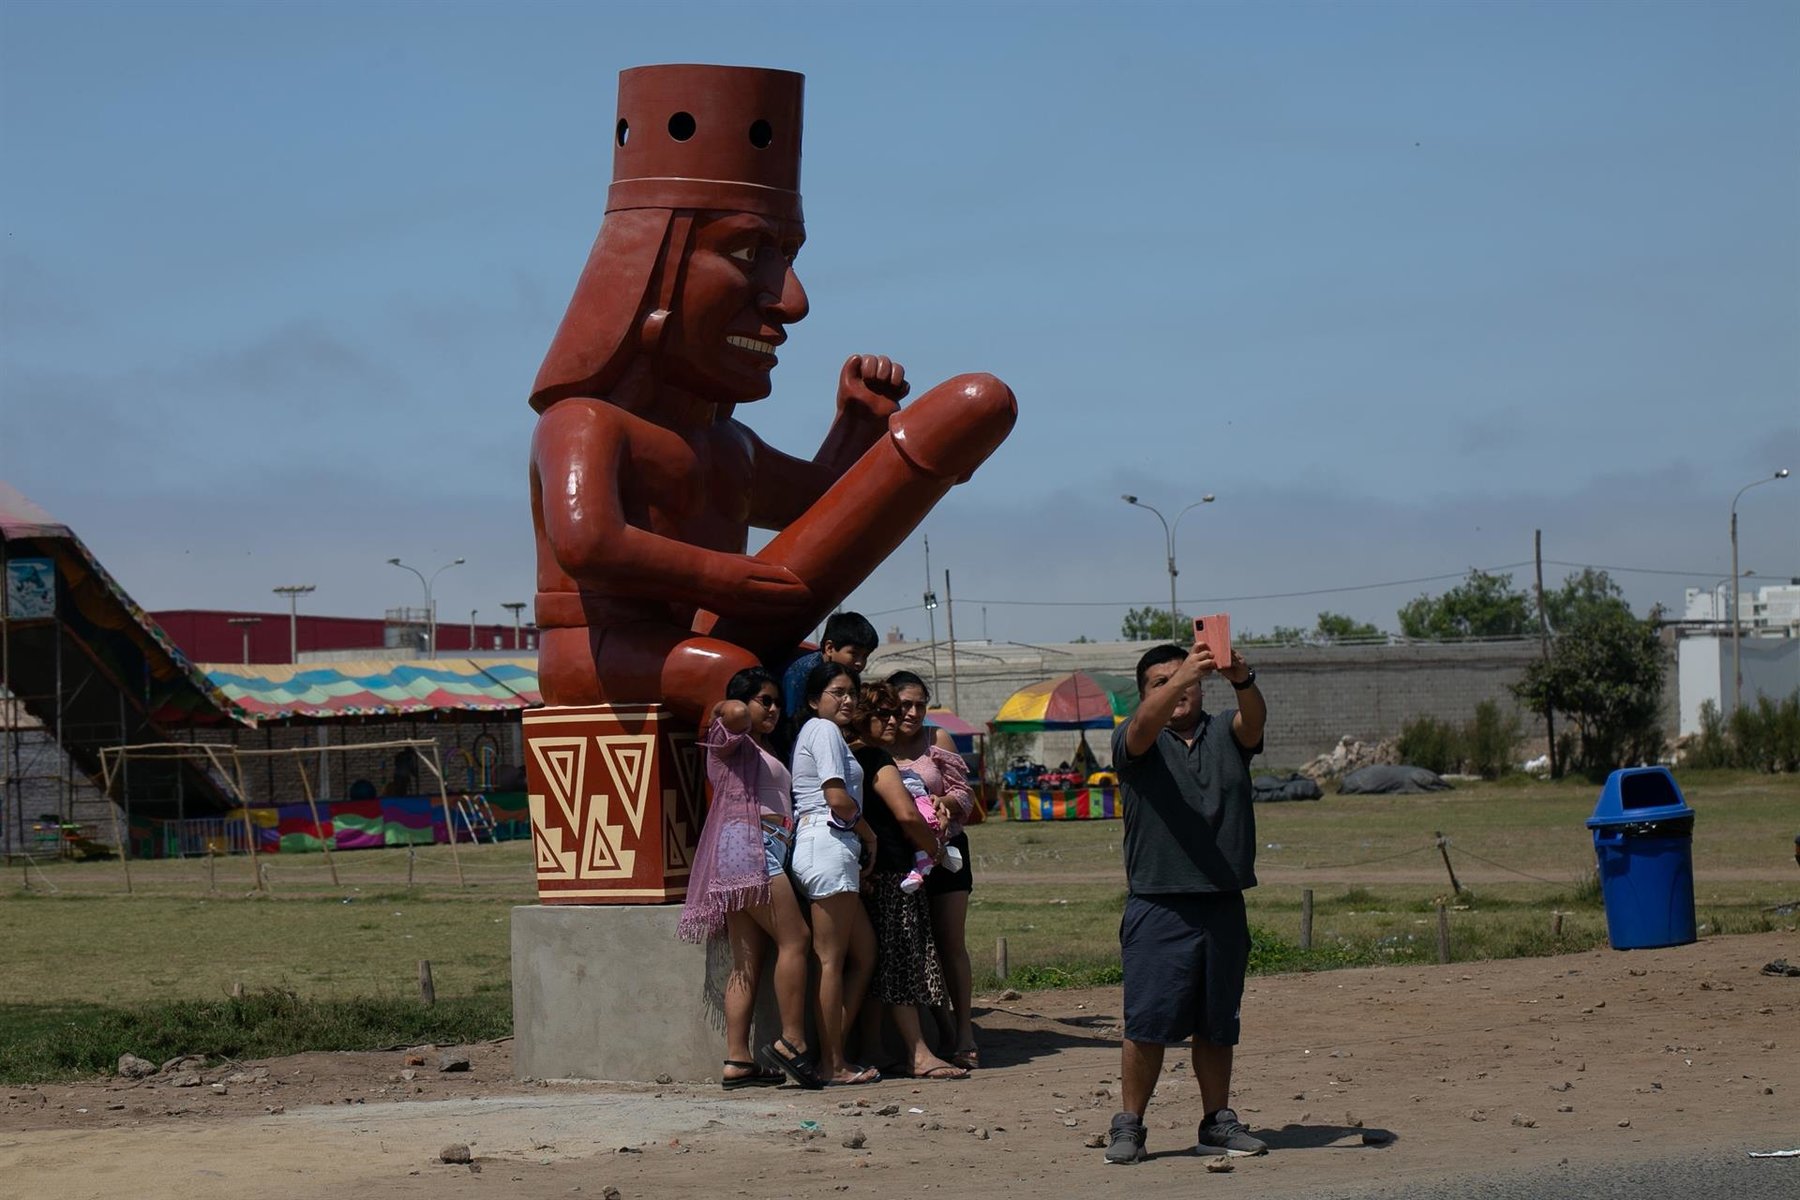 Περού: Ένα φαλλικό άγαλμα αποτελεί τουριστικό πόλο έλξης – Ντόπιοι βάνδαλοι του προκάλεσαν ζημιά